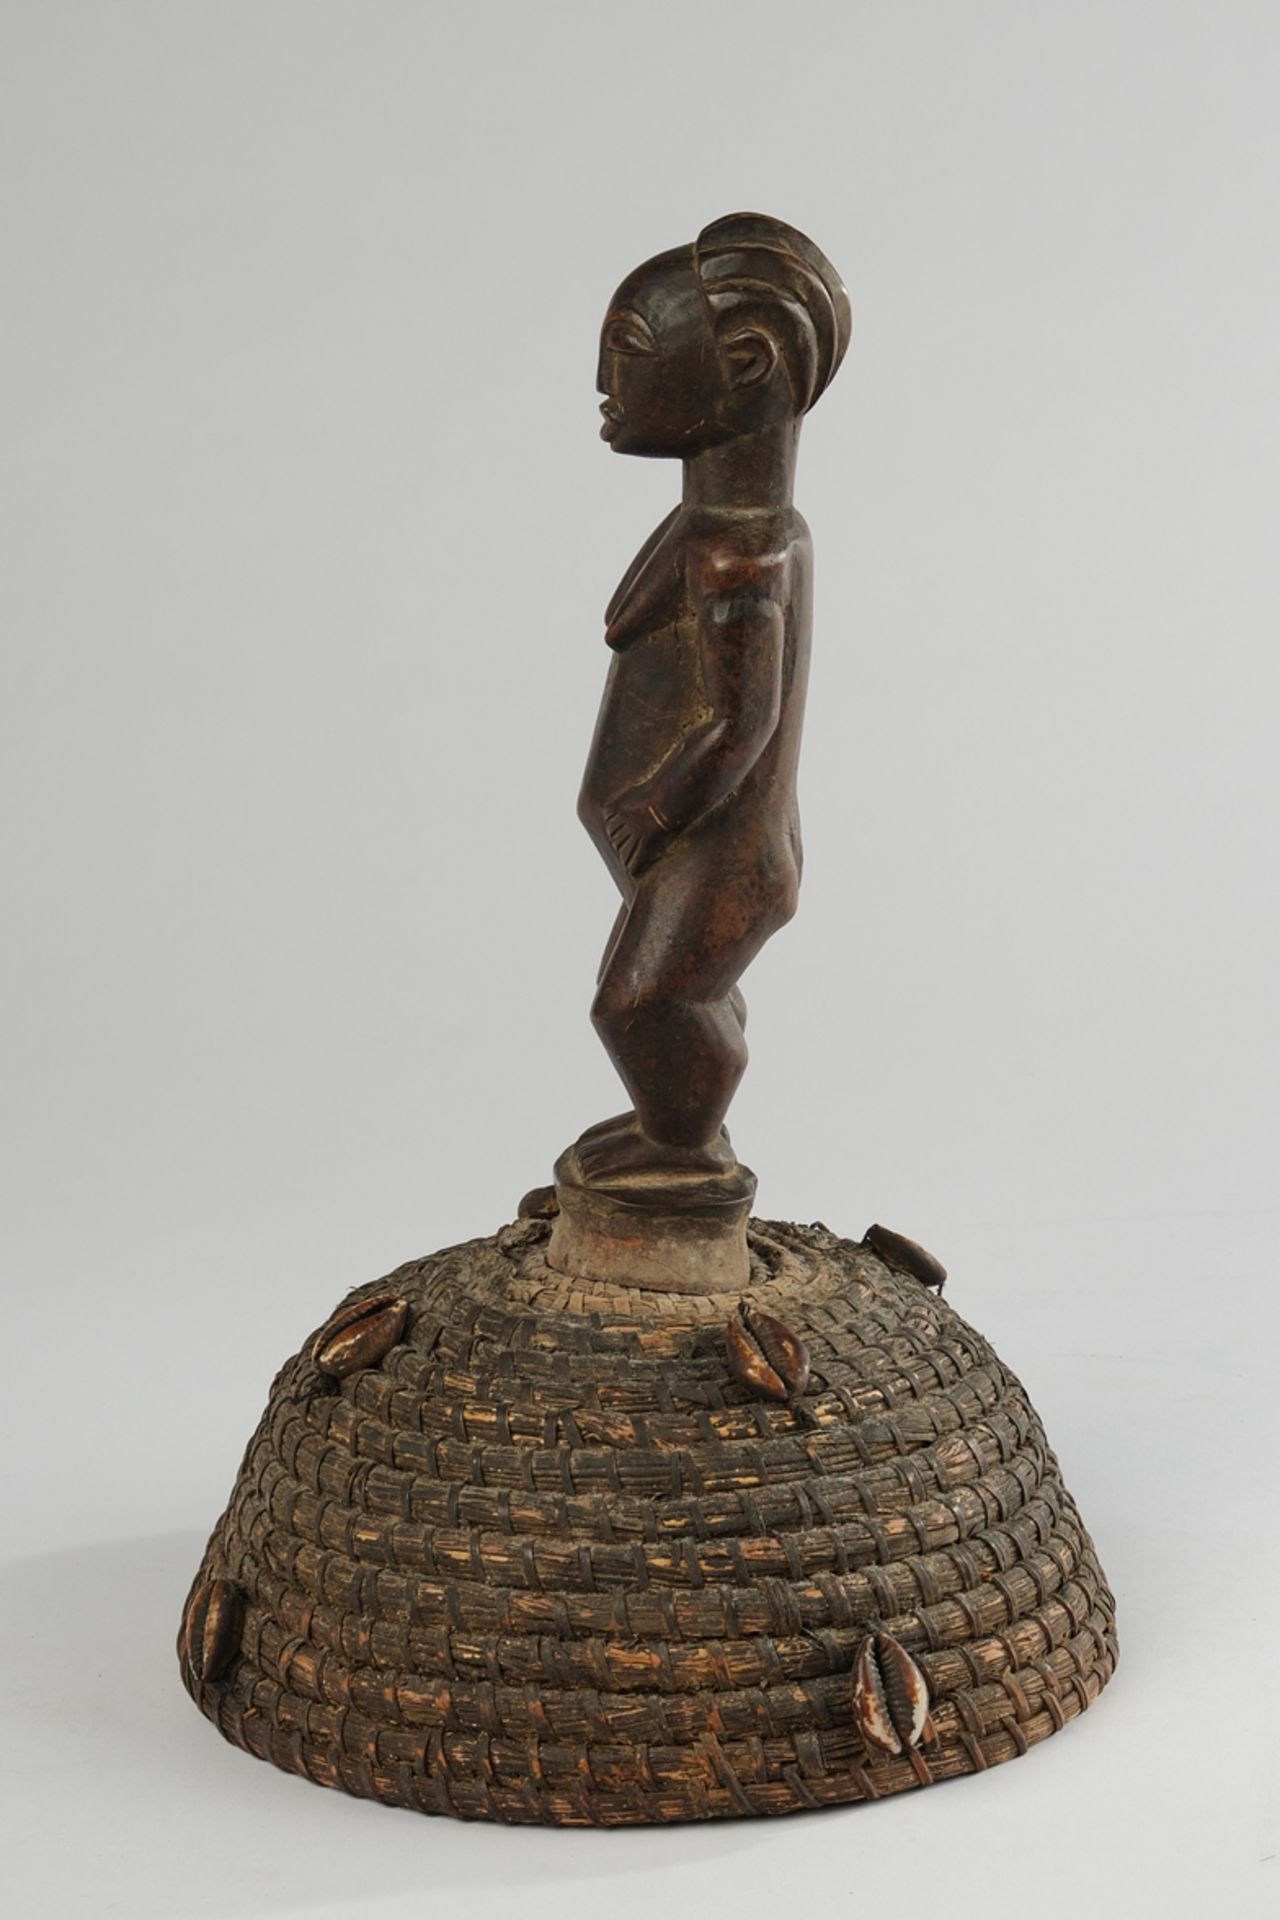 Tanzaufsatz, Luba, Kongo, Afrika, stehende weibliche Figur aus Holz auf Kappe aus Pflanzenfasern mi - Image 4 of 4